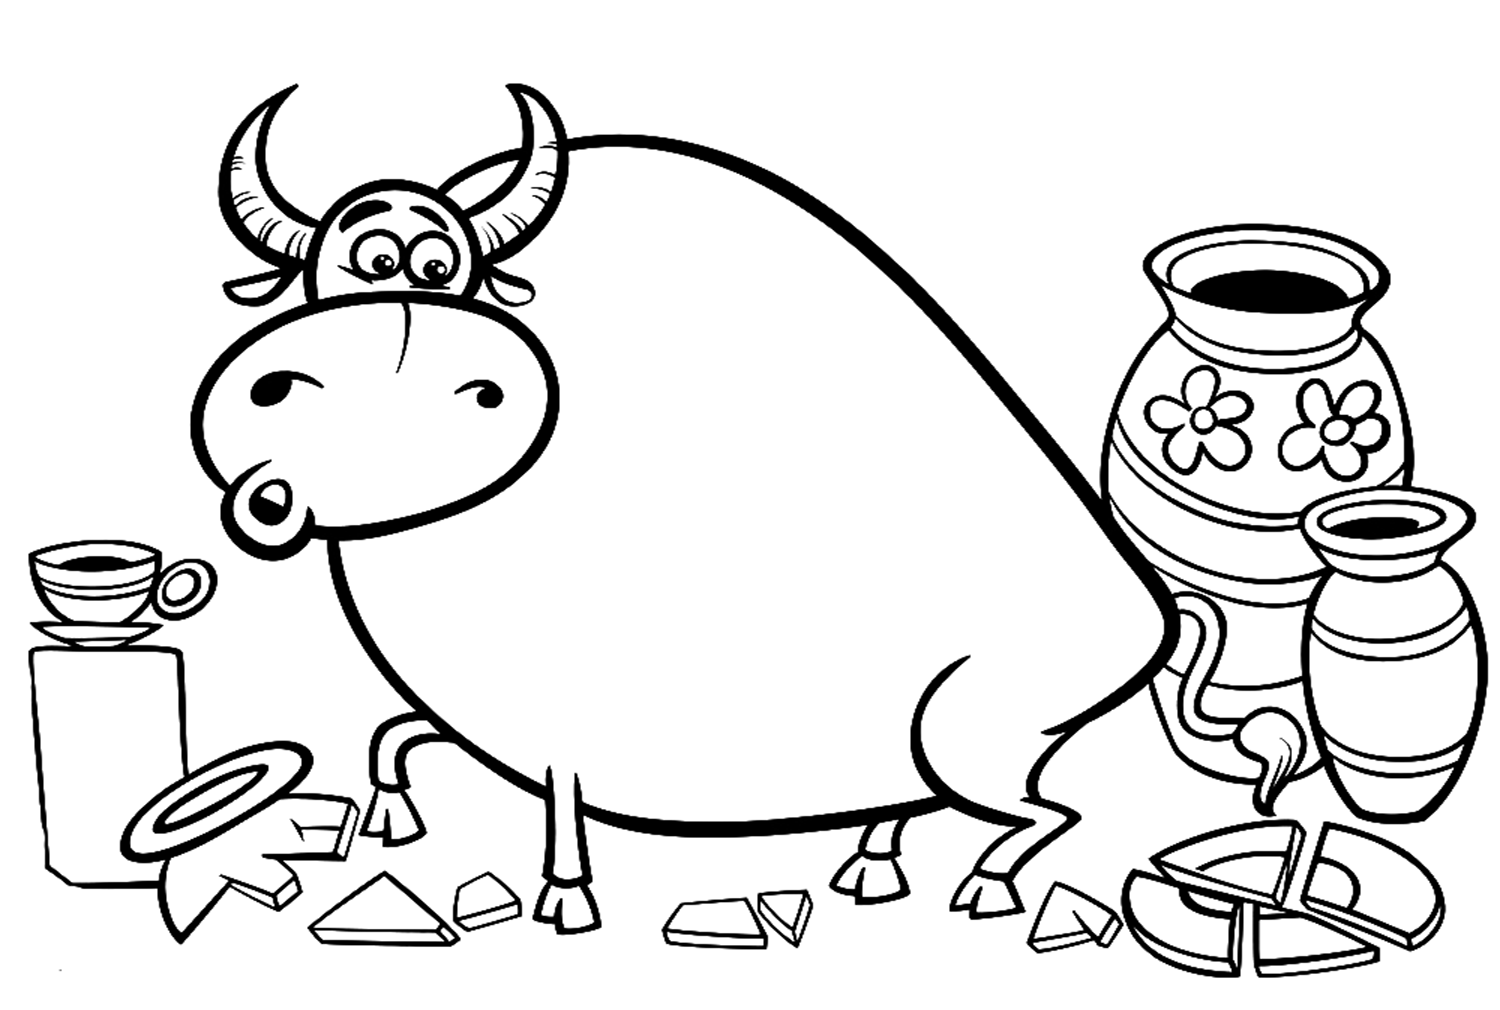 Toro divertente del fumetto da Bull